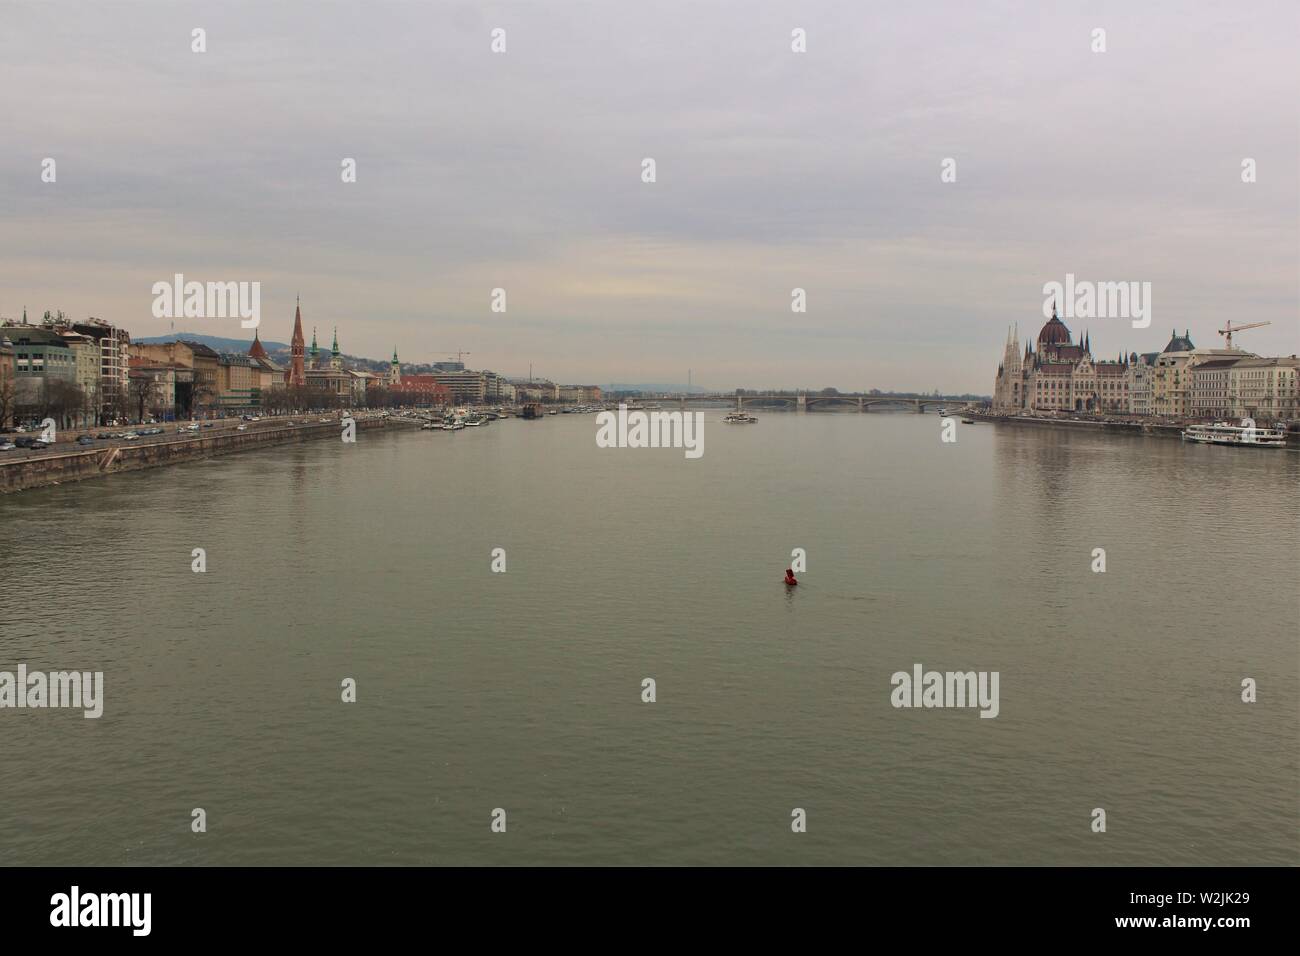 Vue sur le fleuve Danube à Budapest, du côté Buda de la ville (sur la gauche), et le côté Pest (sur la droite). Cliché pris à partir du pont des chaînes. Banque D'Images